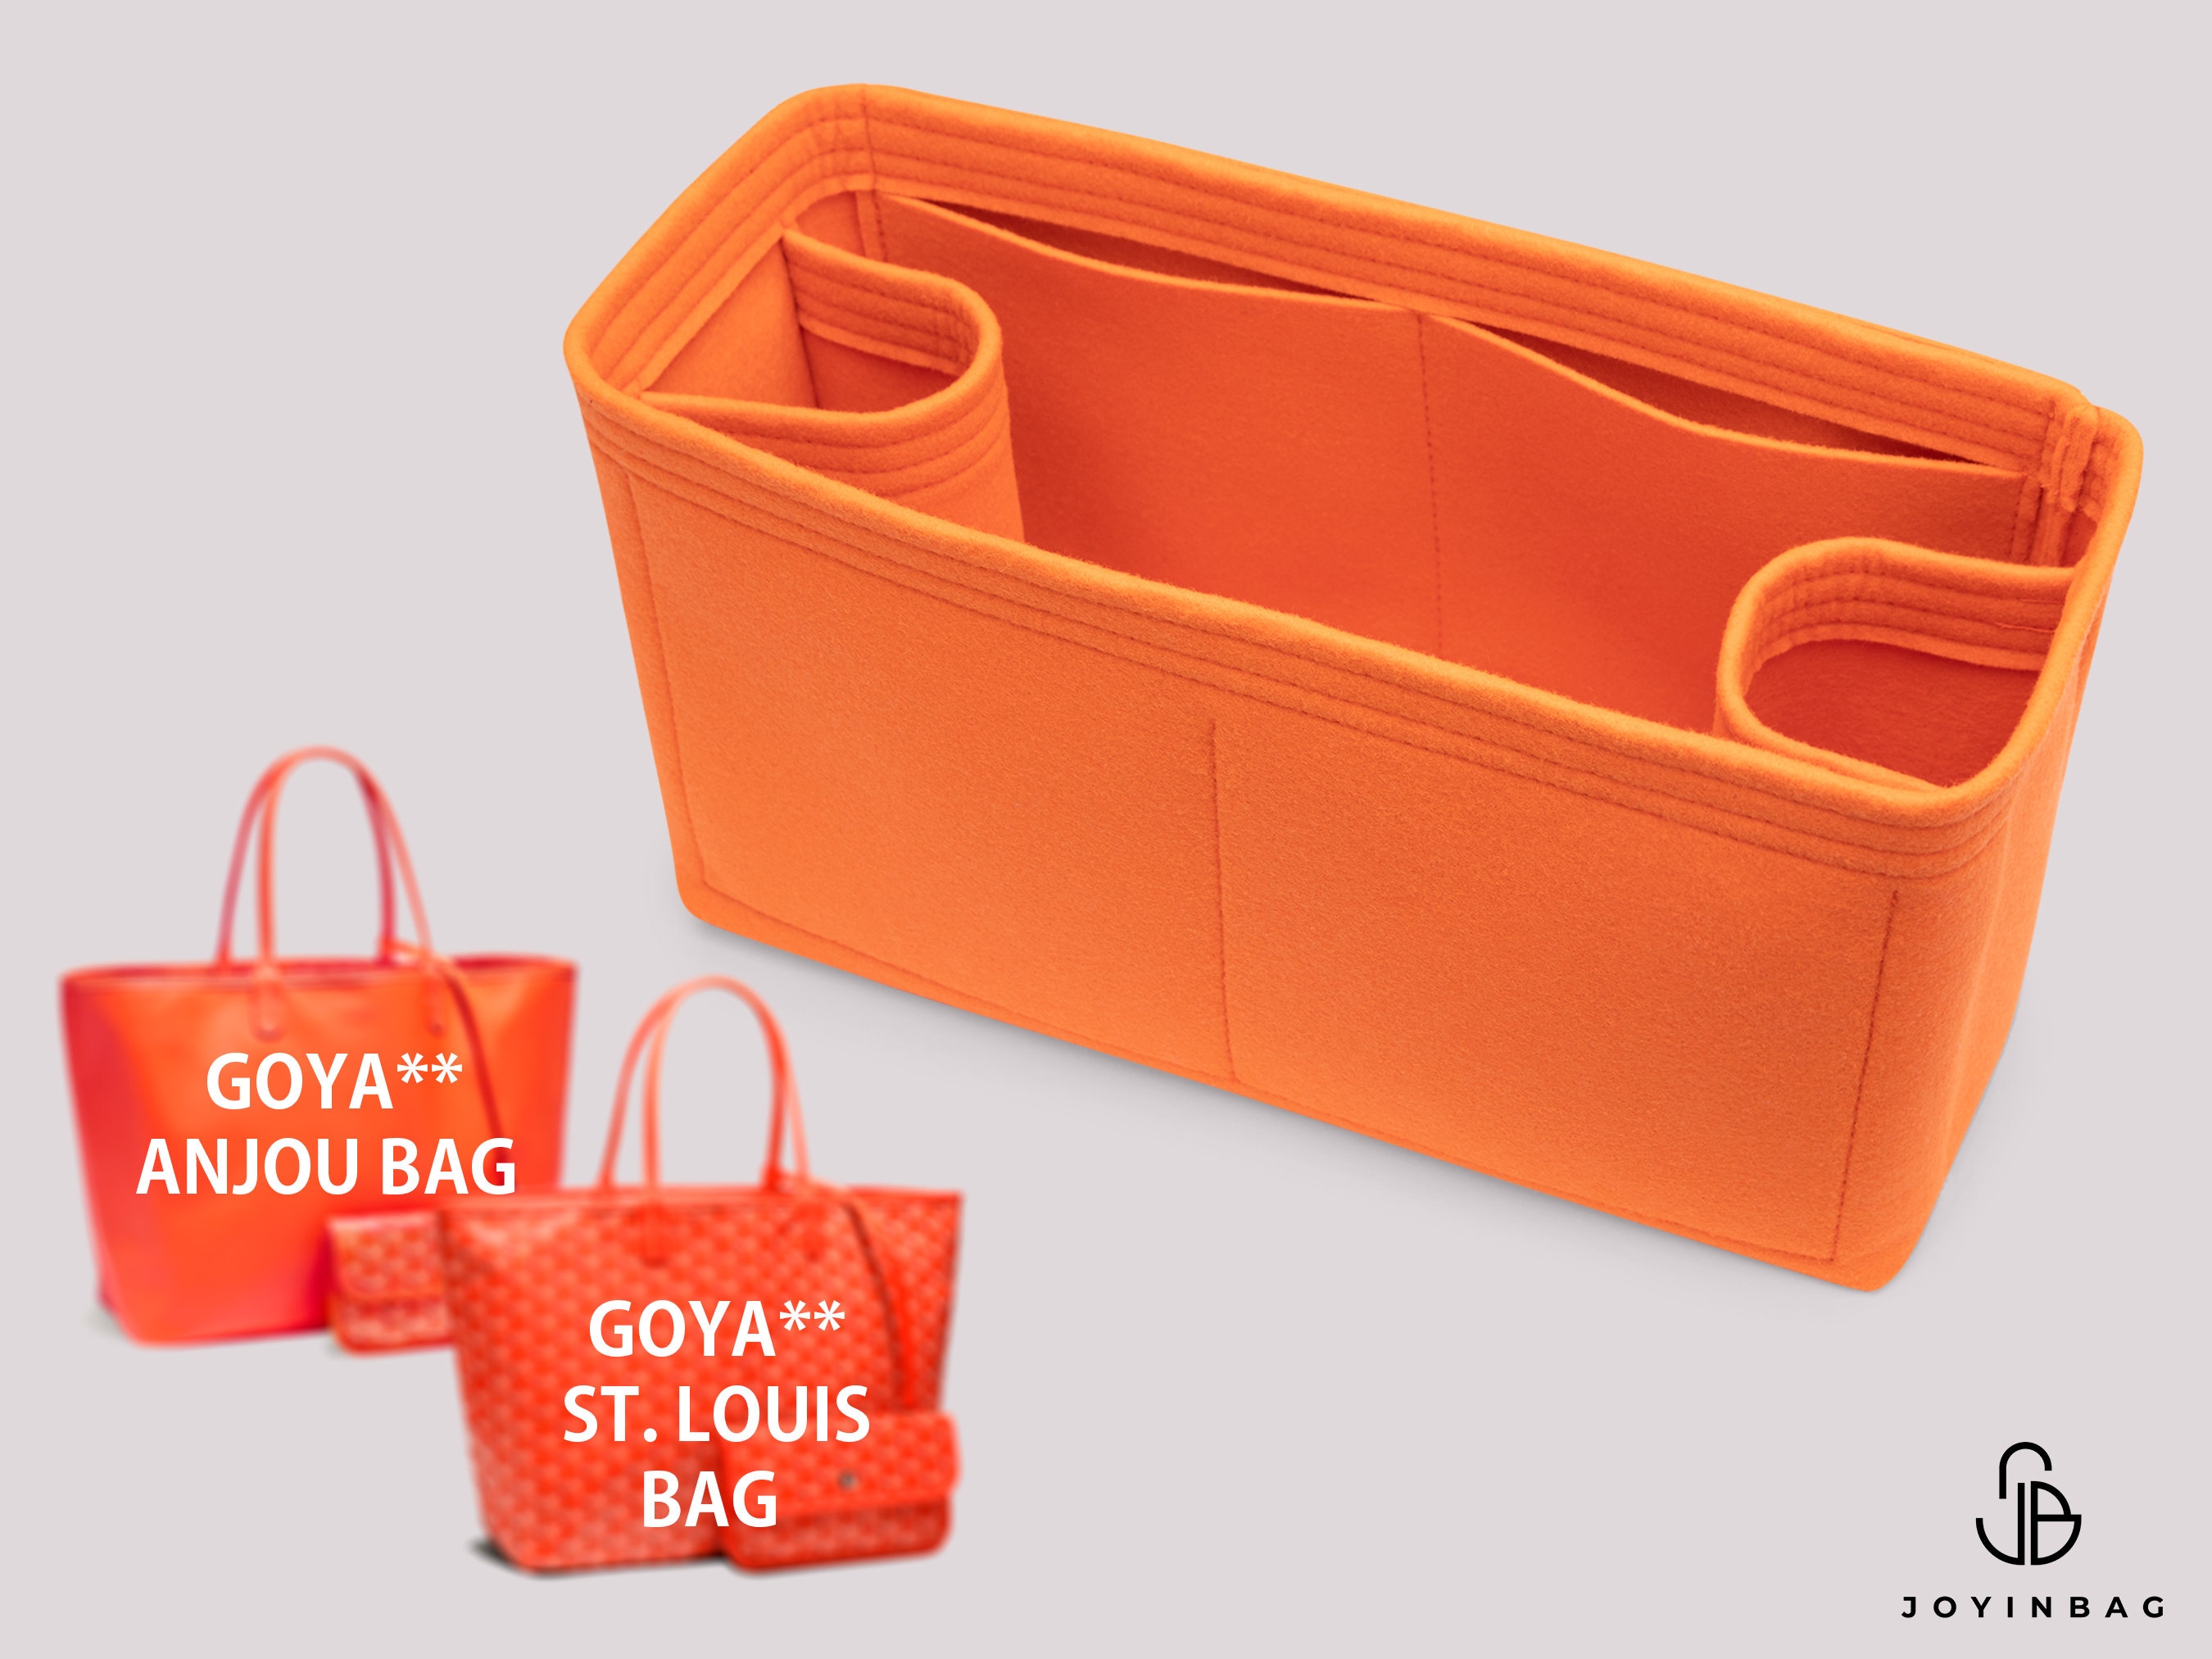 Bag organizer for Goyard, Goyard organizers, goyard bag organizers, goyard  anjou organizer, felt bag organizer, bag purse organizer